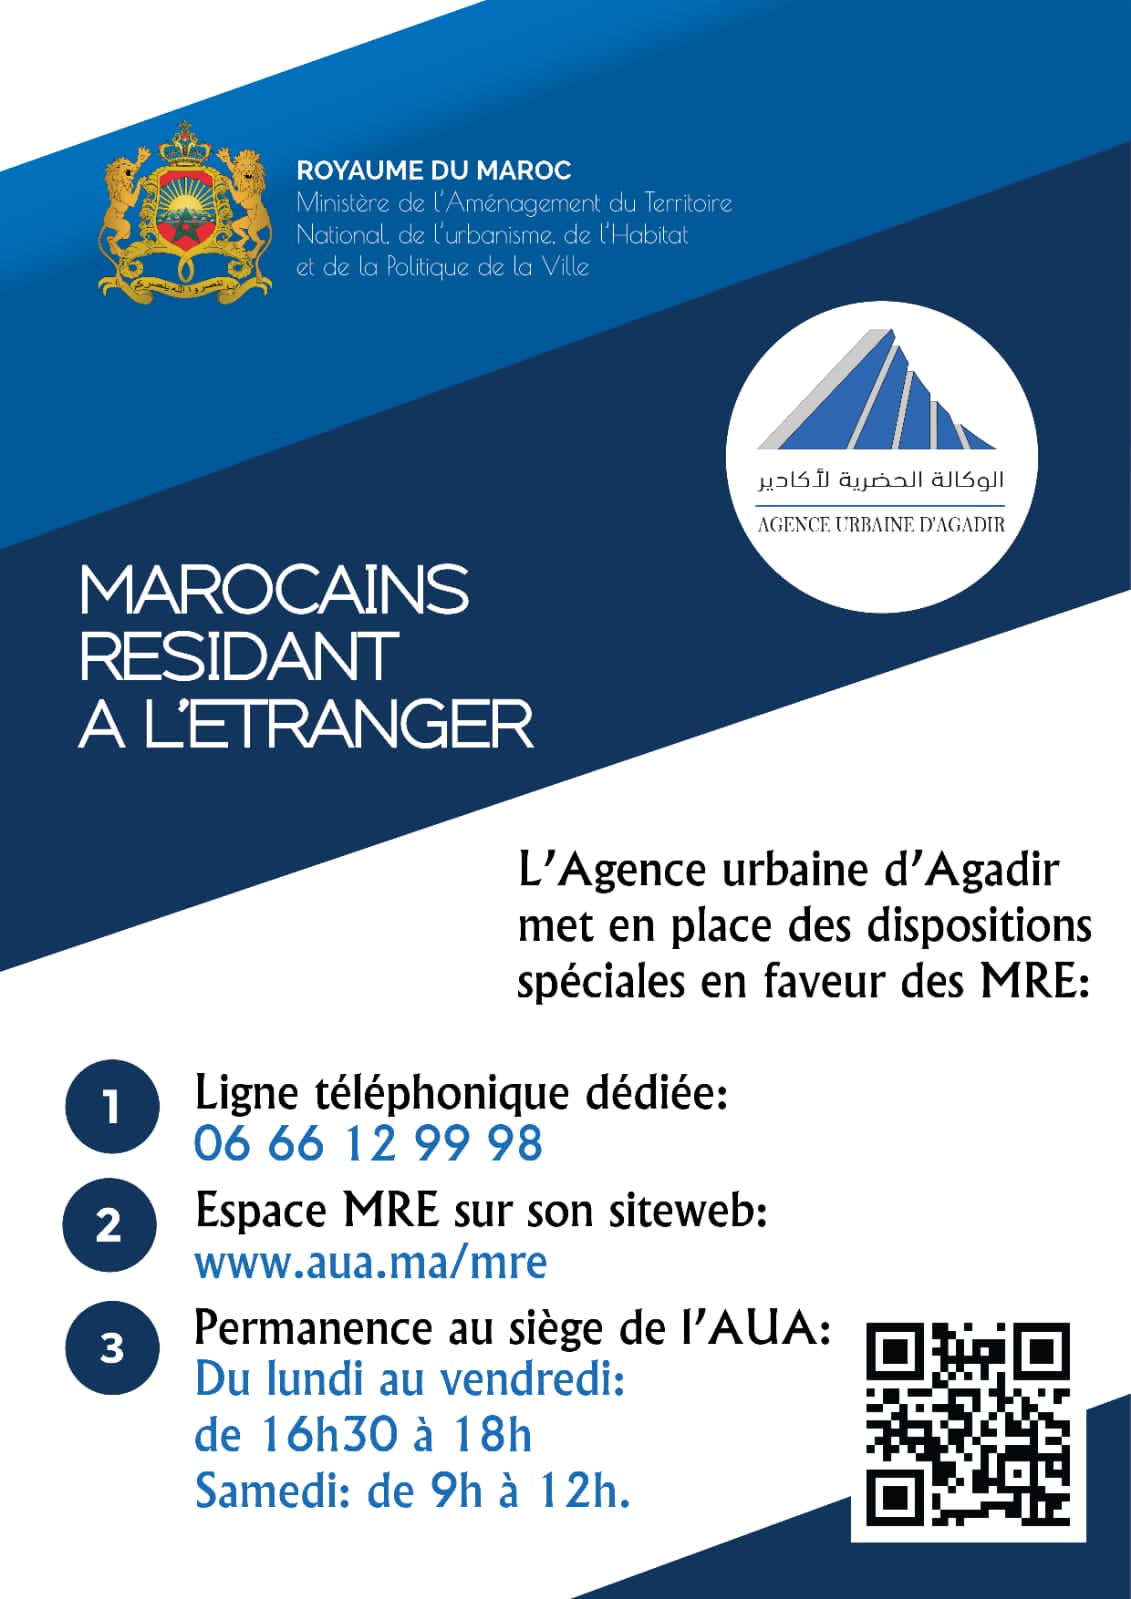 تدابير استثنائية بالوكالة الحضرية لاكادير لمواكبة الجالية المغربية